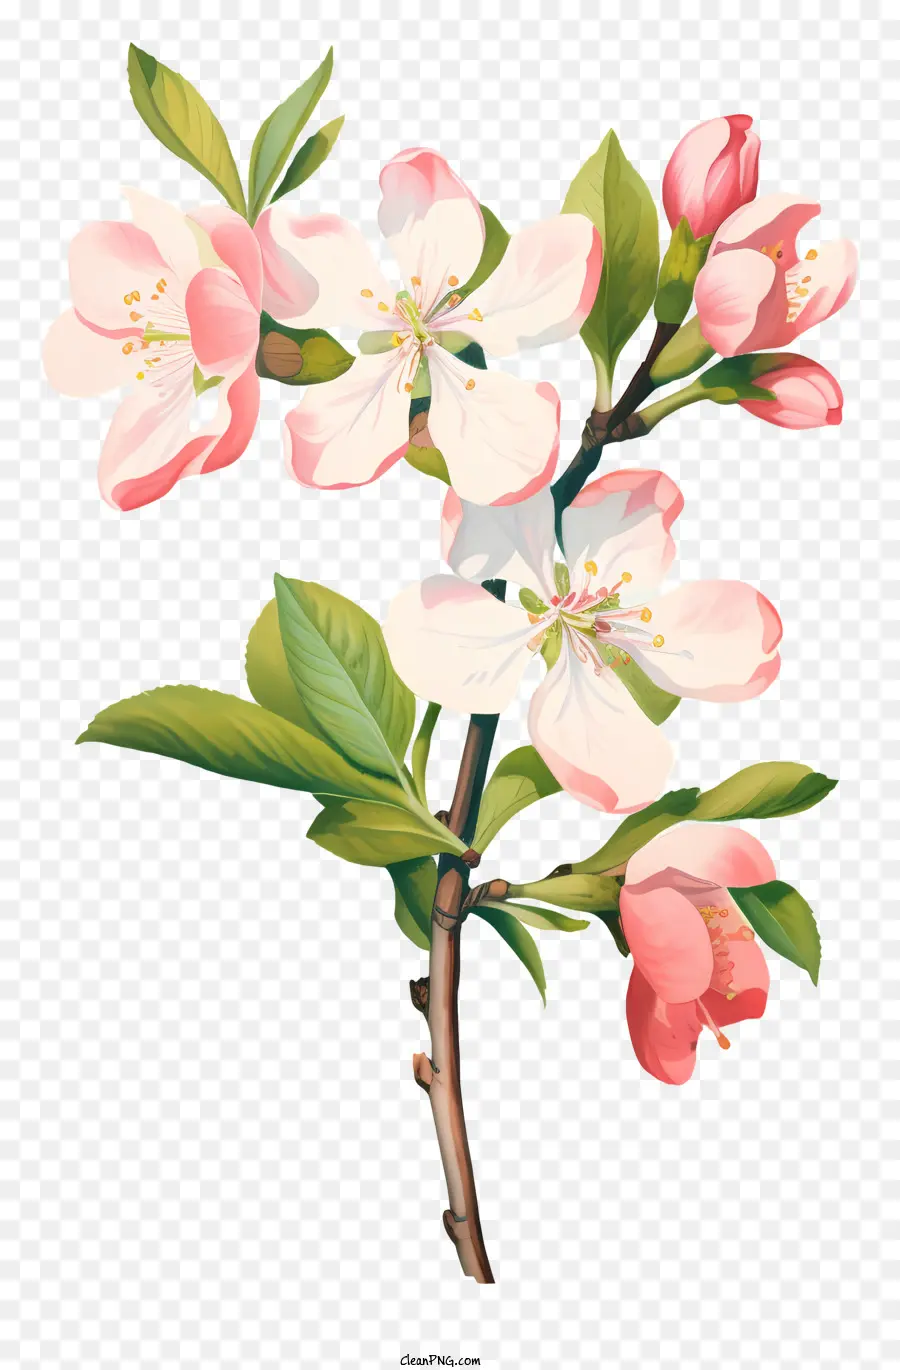 cây táo - Cây táo có hoa với hoa hồng và táo xanh